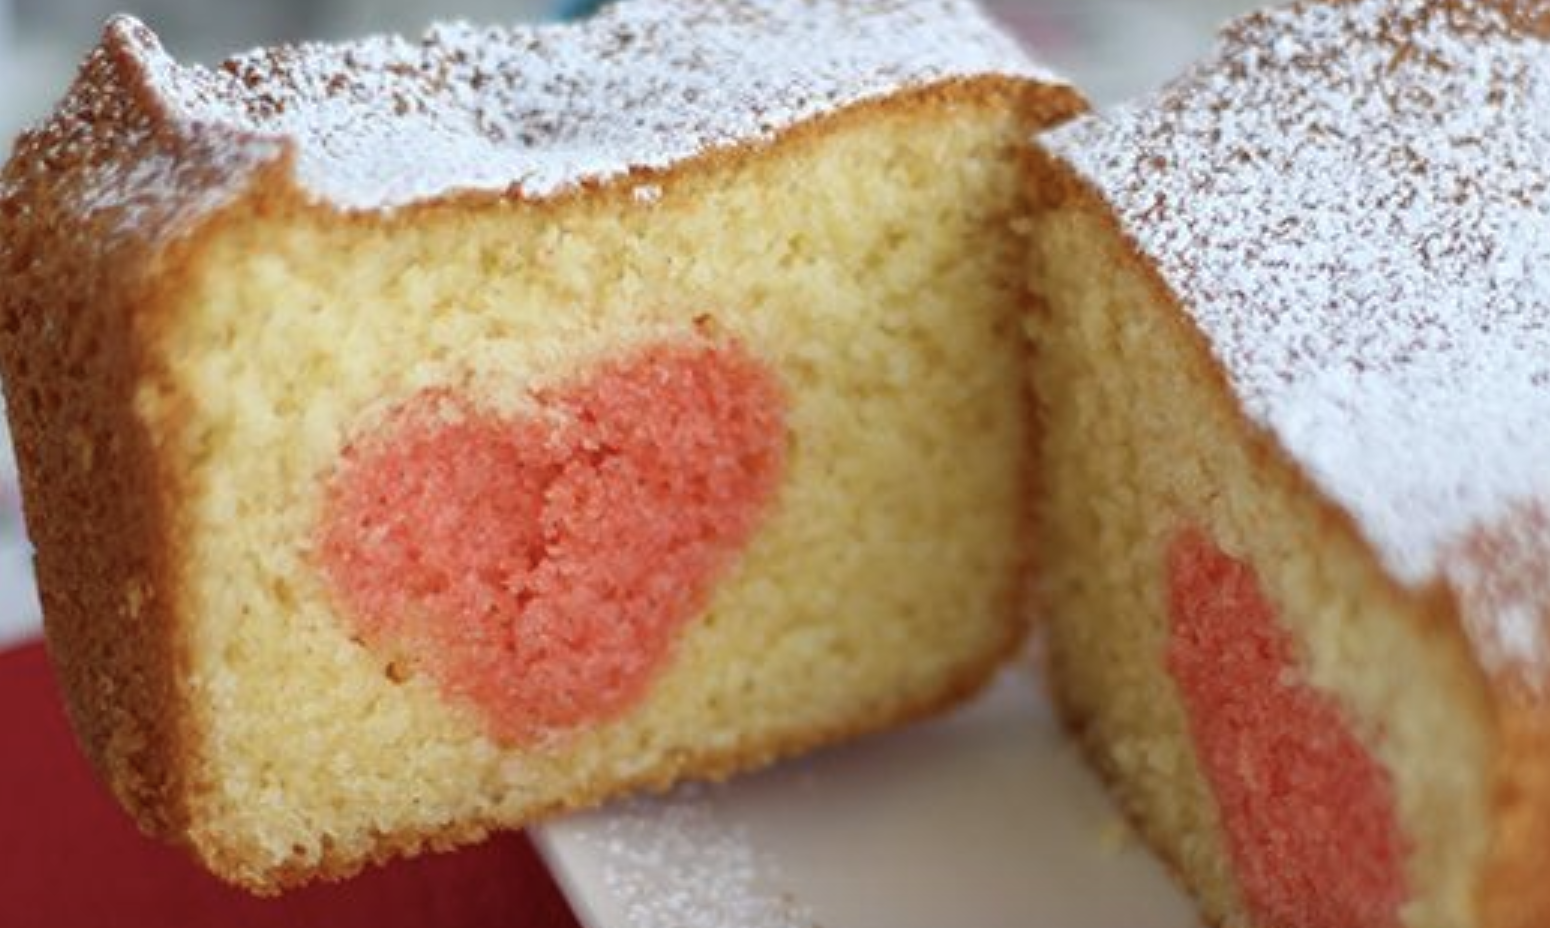 plumcake-a-sorpresa-di-san-valentino:-il-trucco-semplicissimo-per-nascondere-all’interno-un-soffice-cuore-rosso